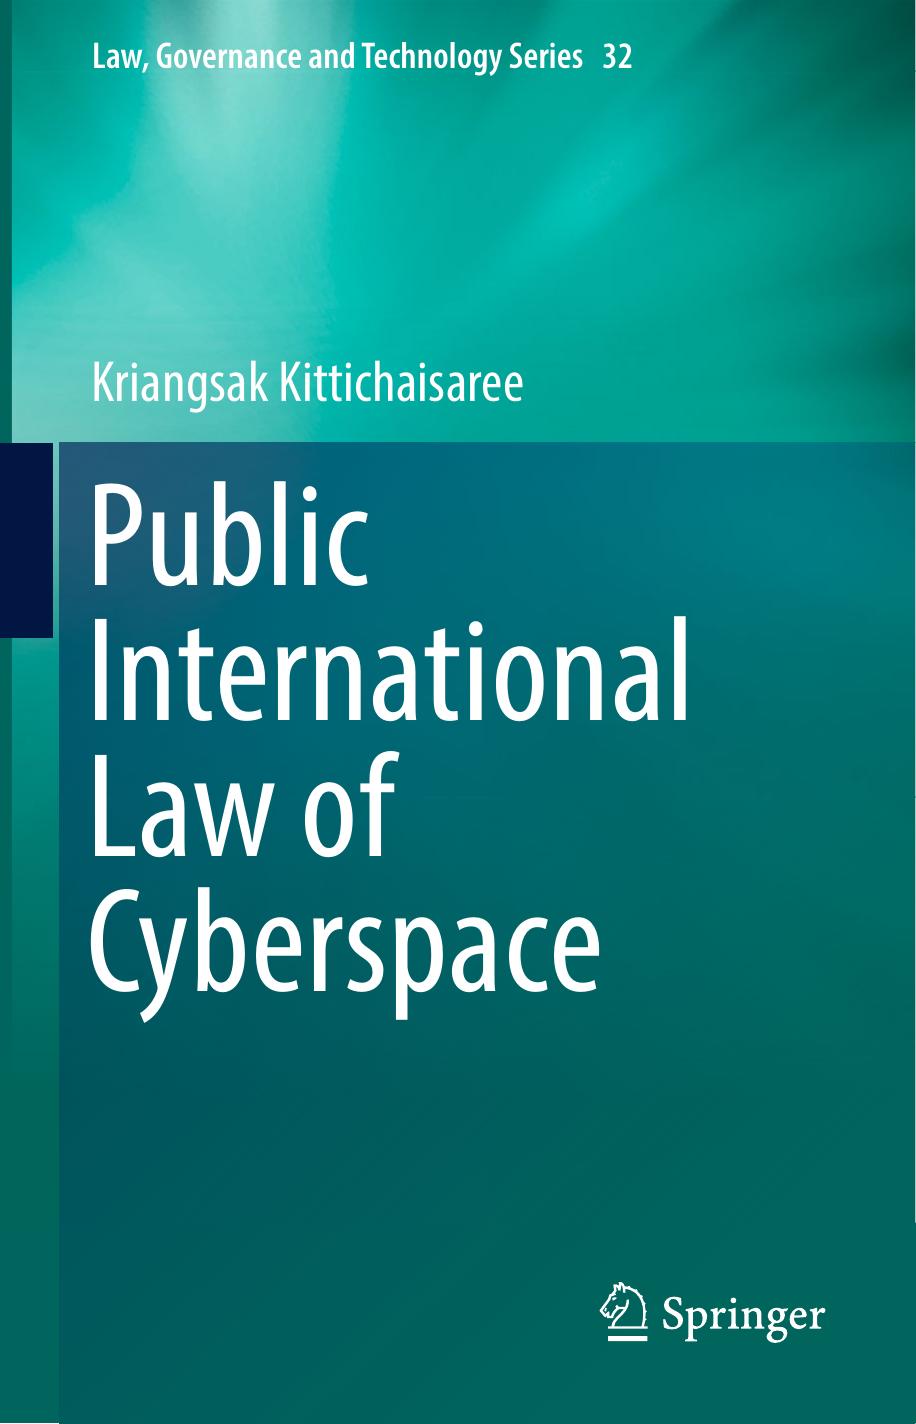 Public International Law of Cyberspace 2017